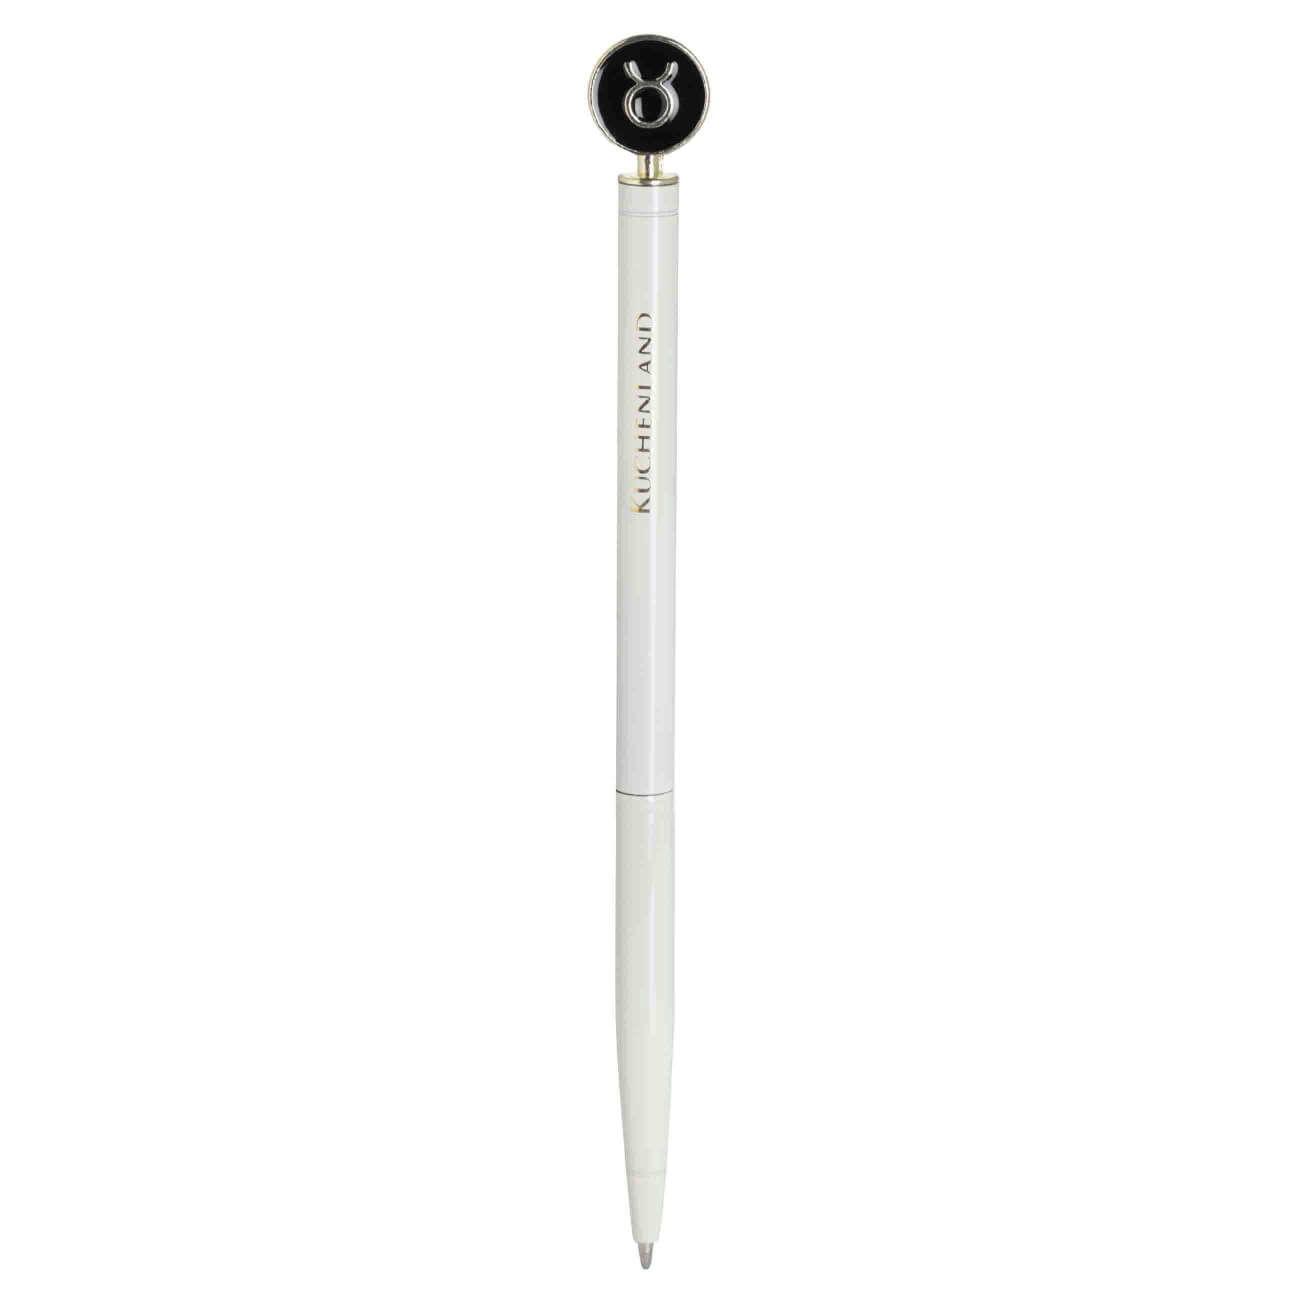 Ручка шариковая, 15 см, с фигуркой, сталь, молочно-золотистая, Телец, Zodiac ручка закладка